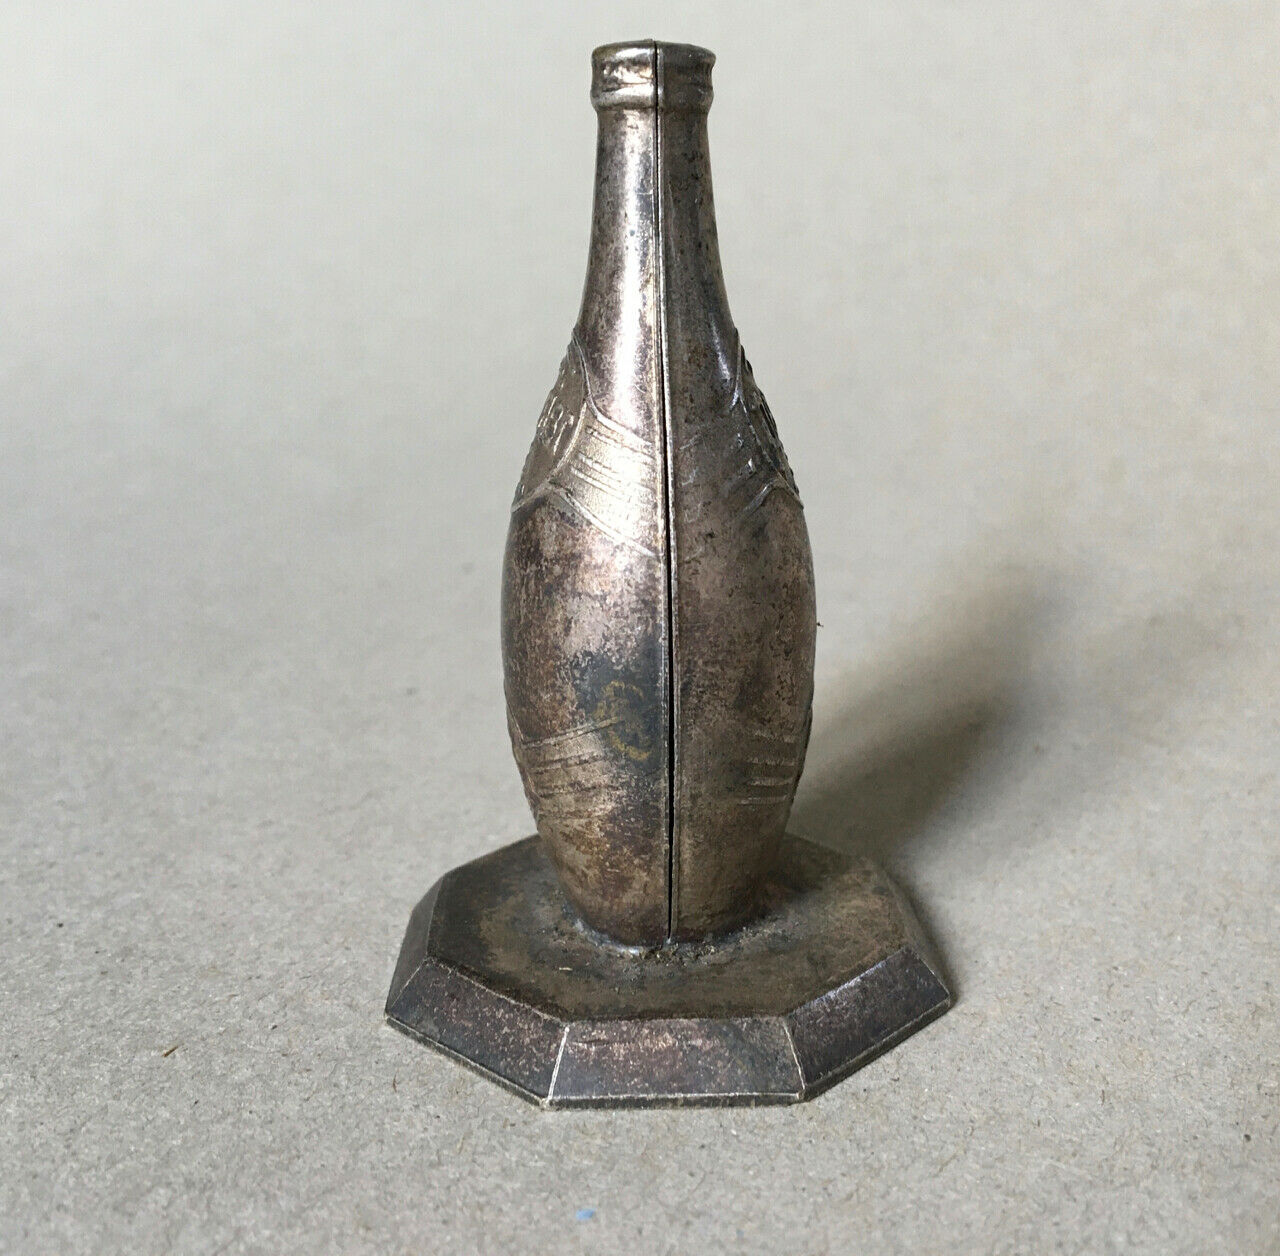 Bouteille publicitaire — Perrier — métal argenté — art déco — 7 cm. — circa 1930